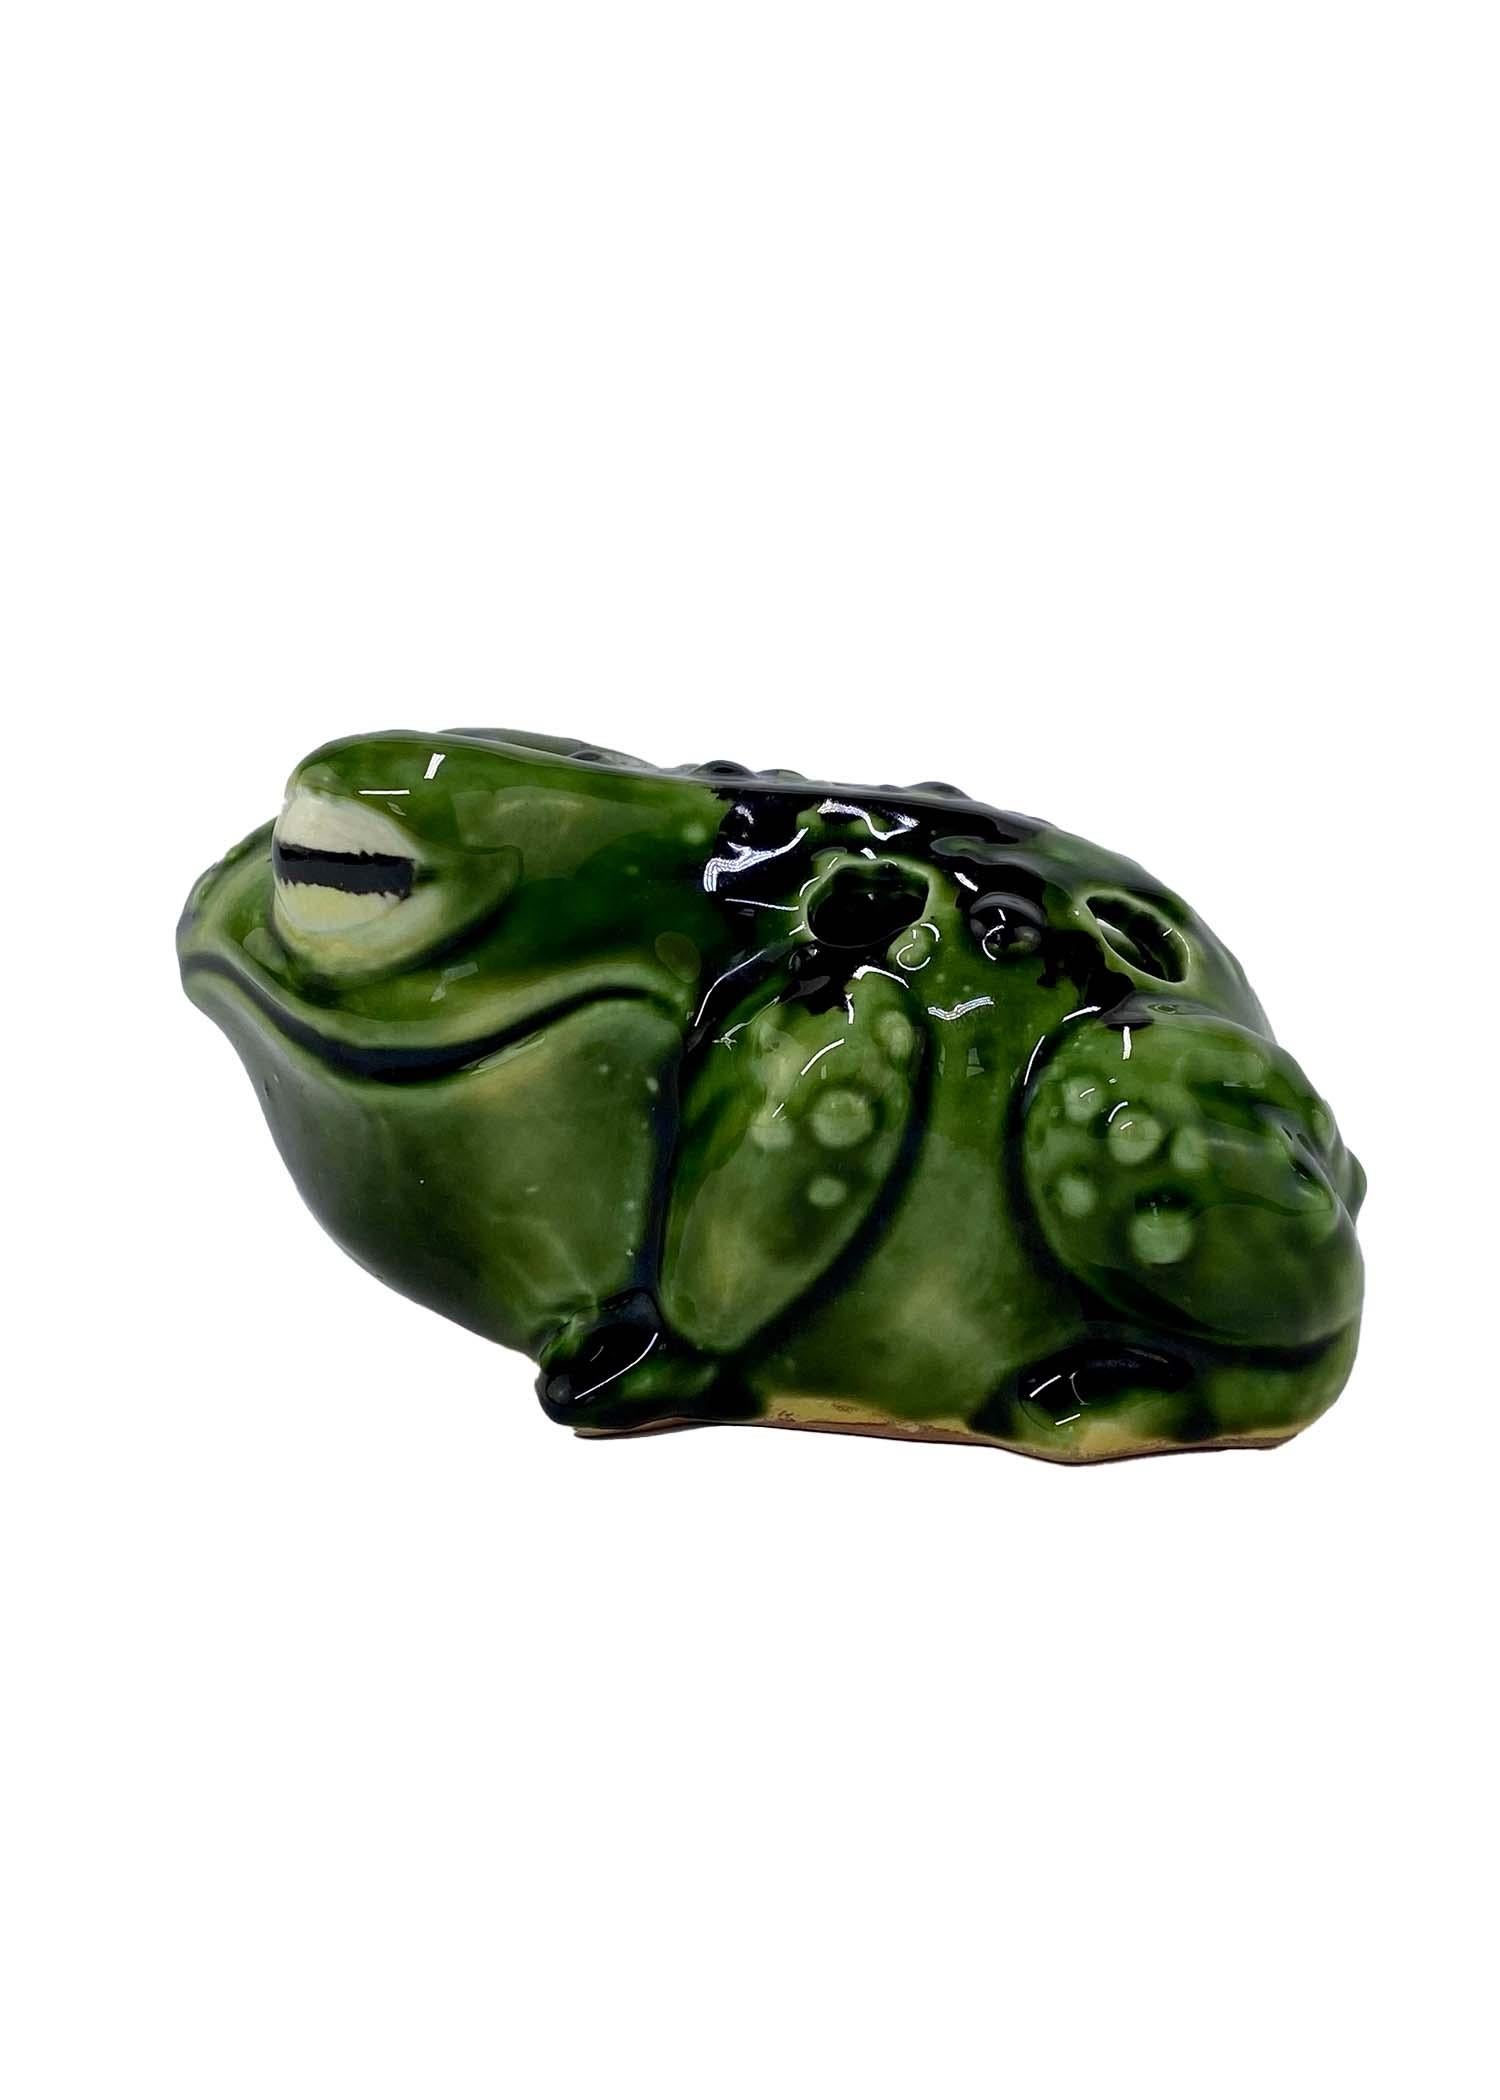 vintage ceramic frog